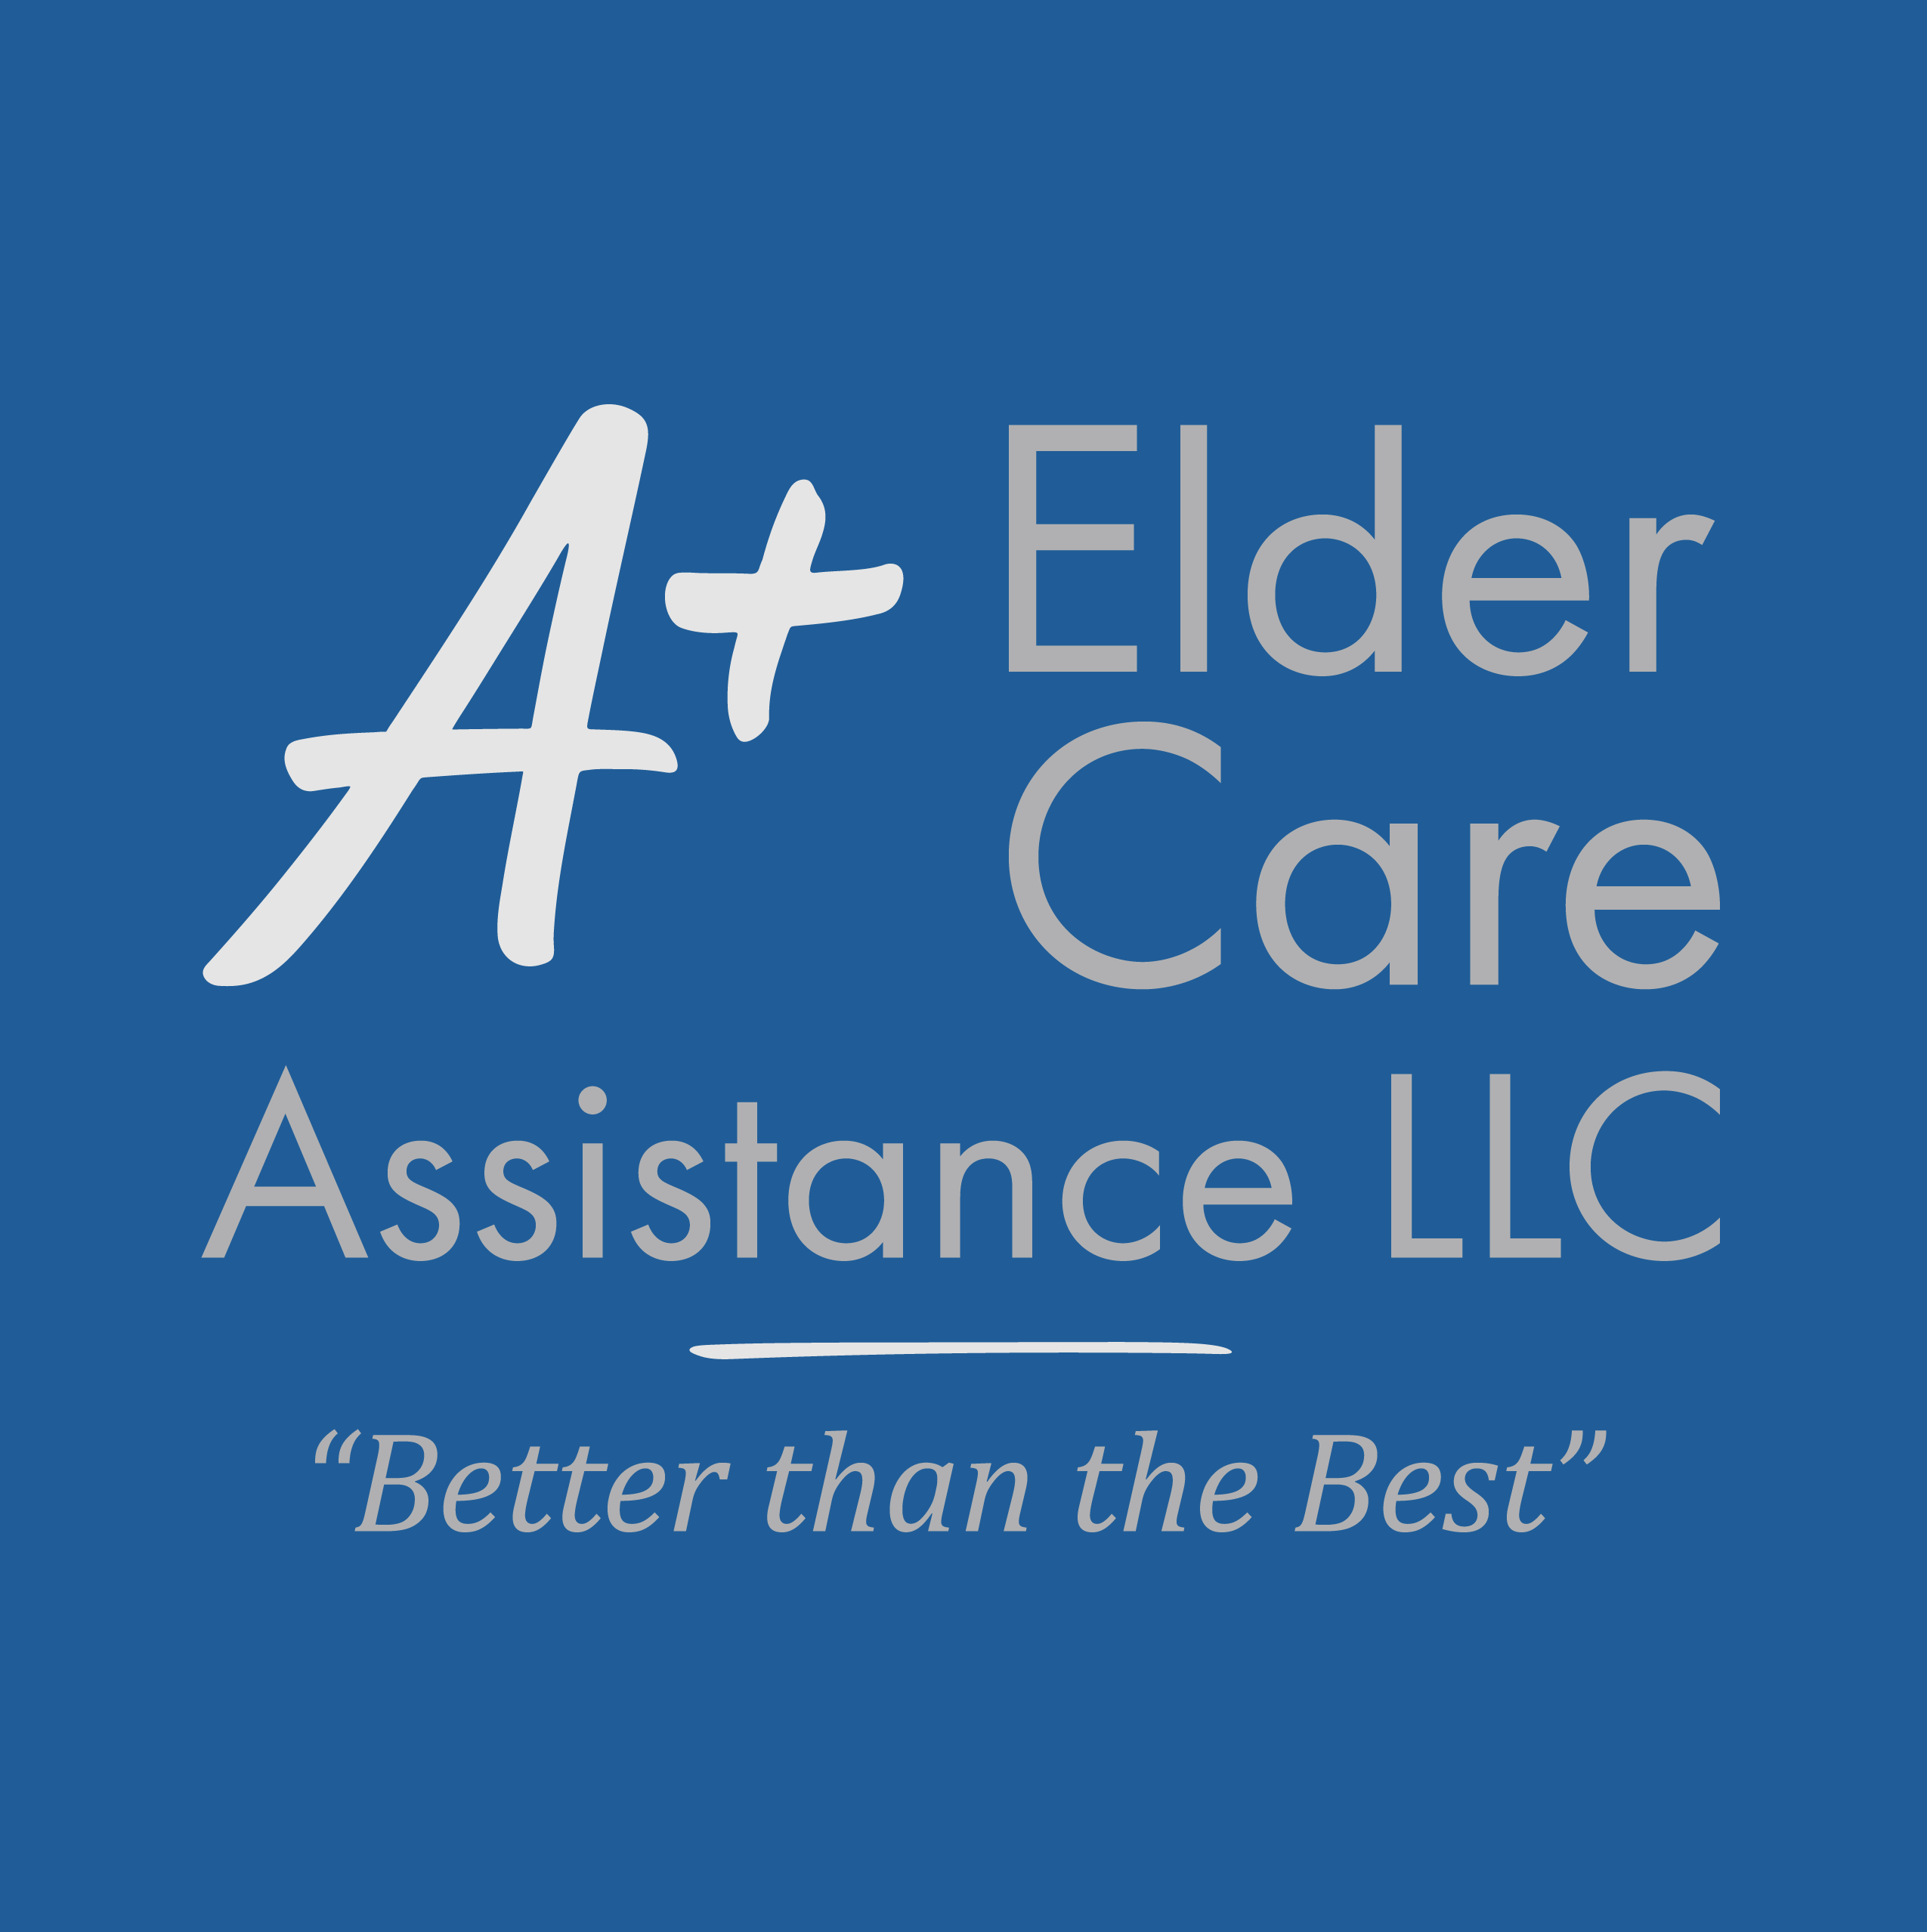 A+ Elder Care Assistance  - Tucson, AZ